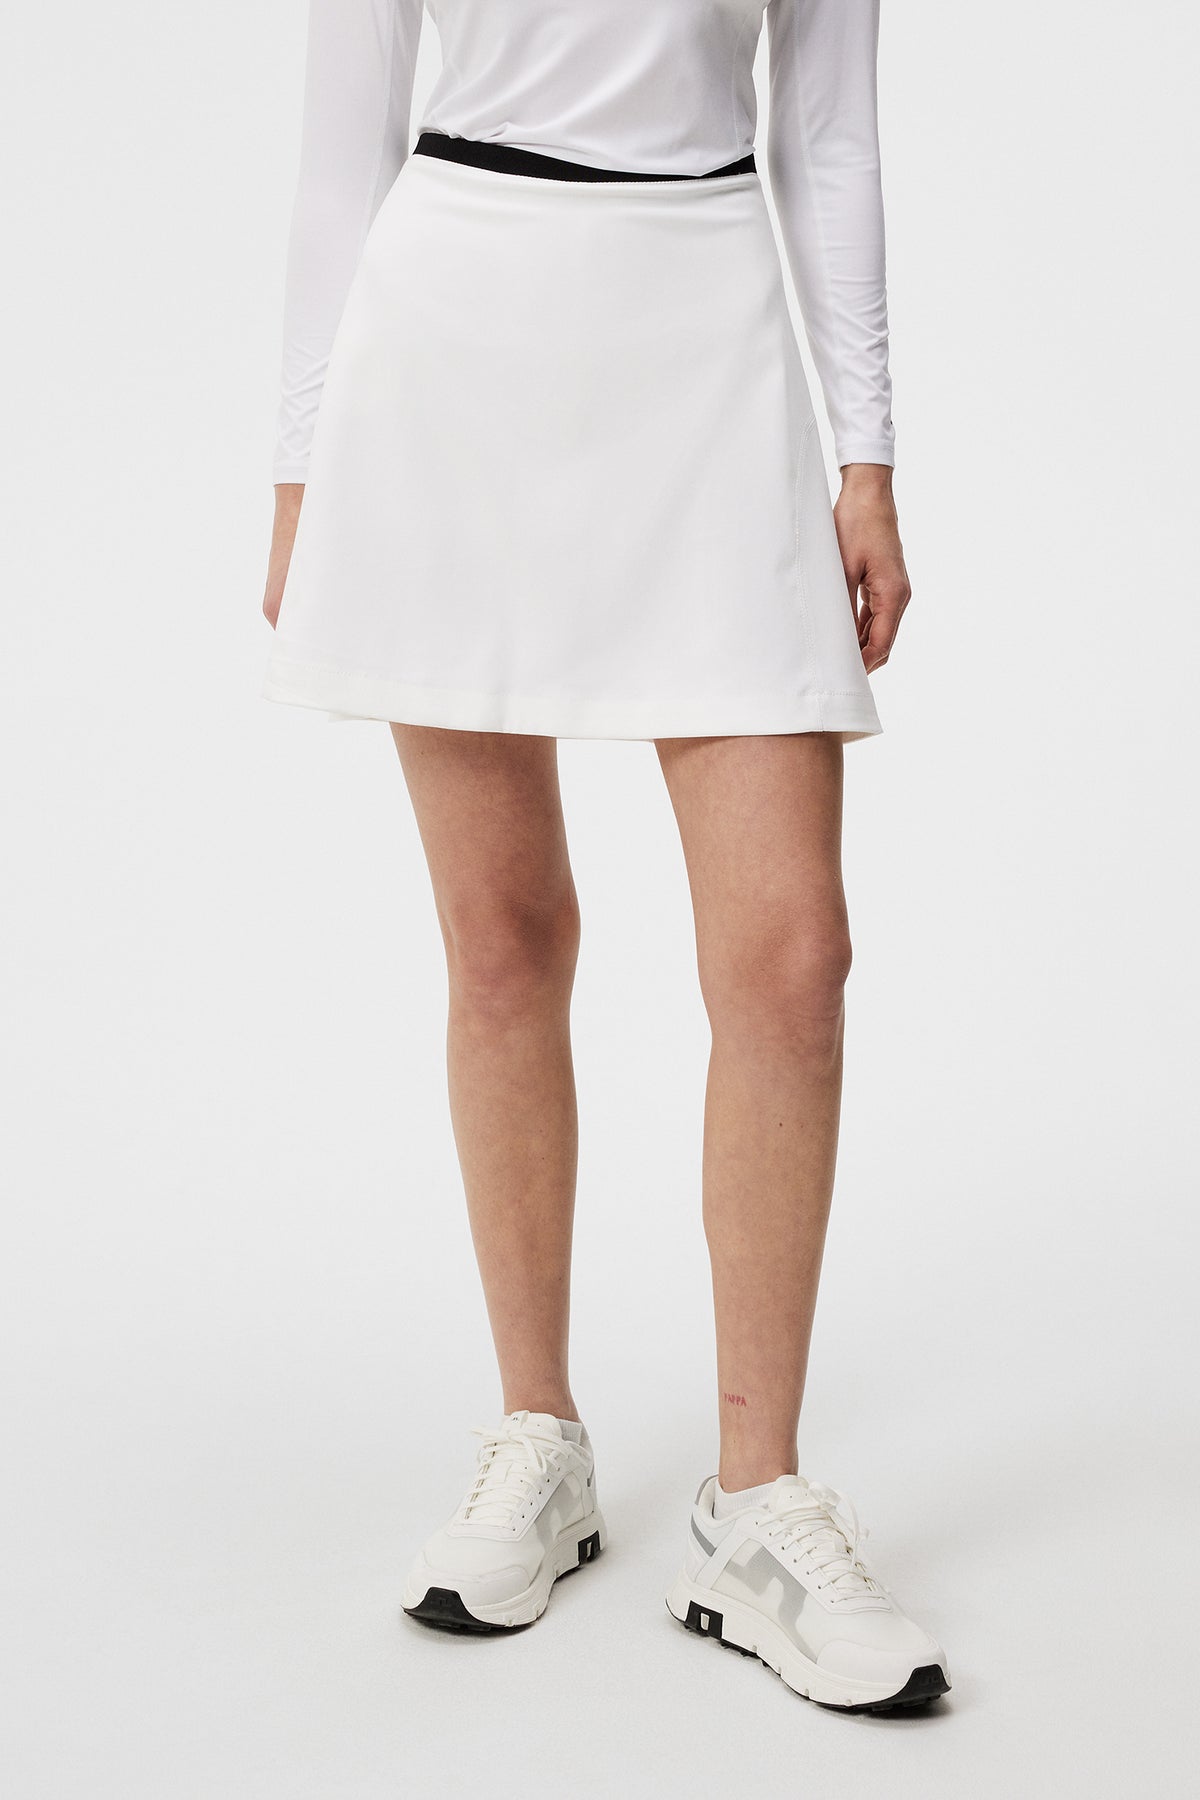 Themba Skirt / White